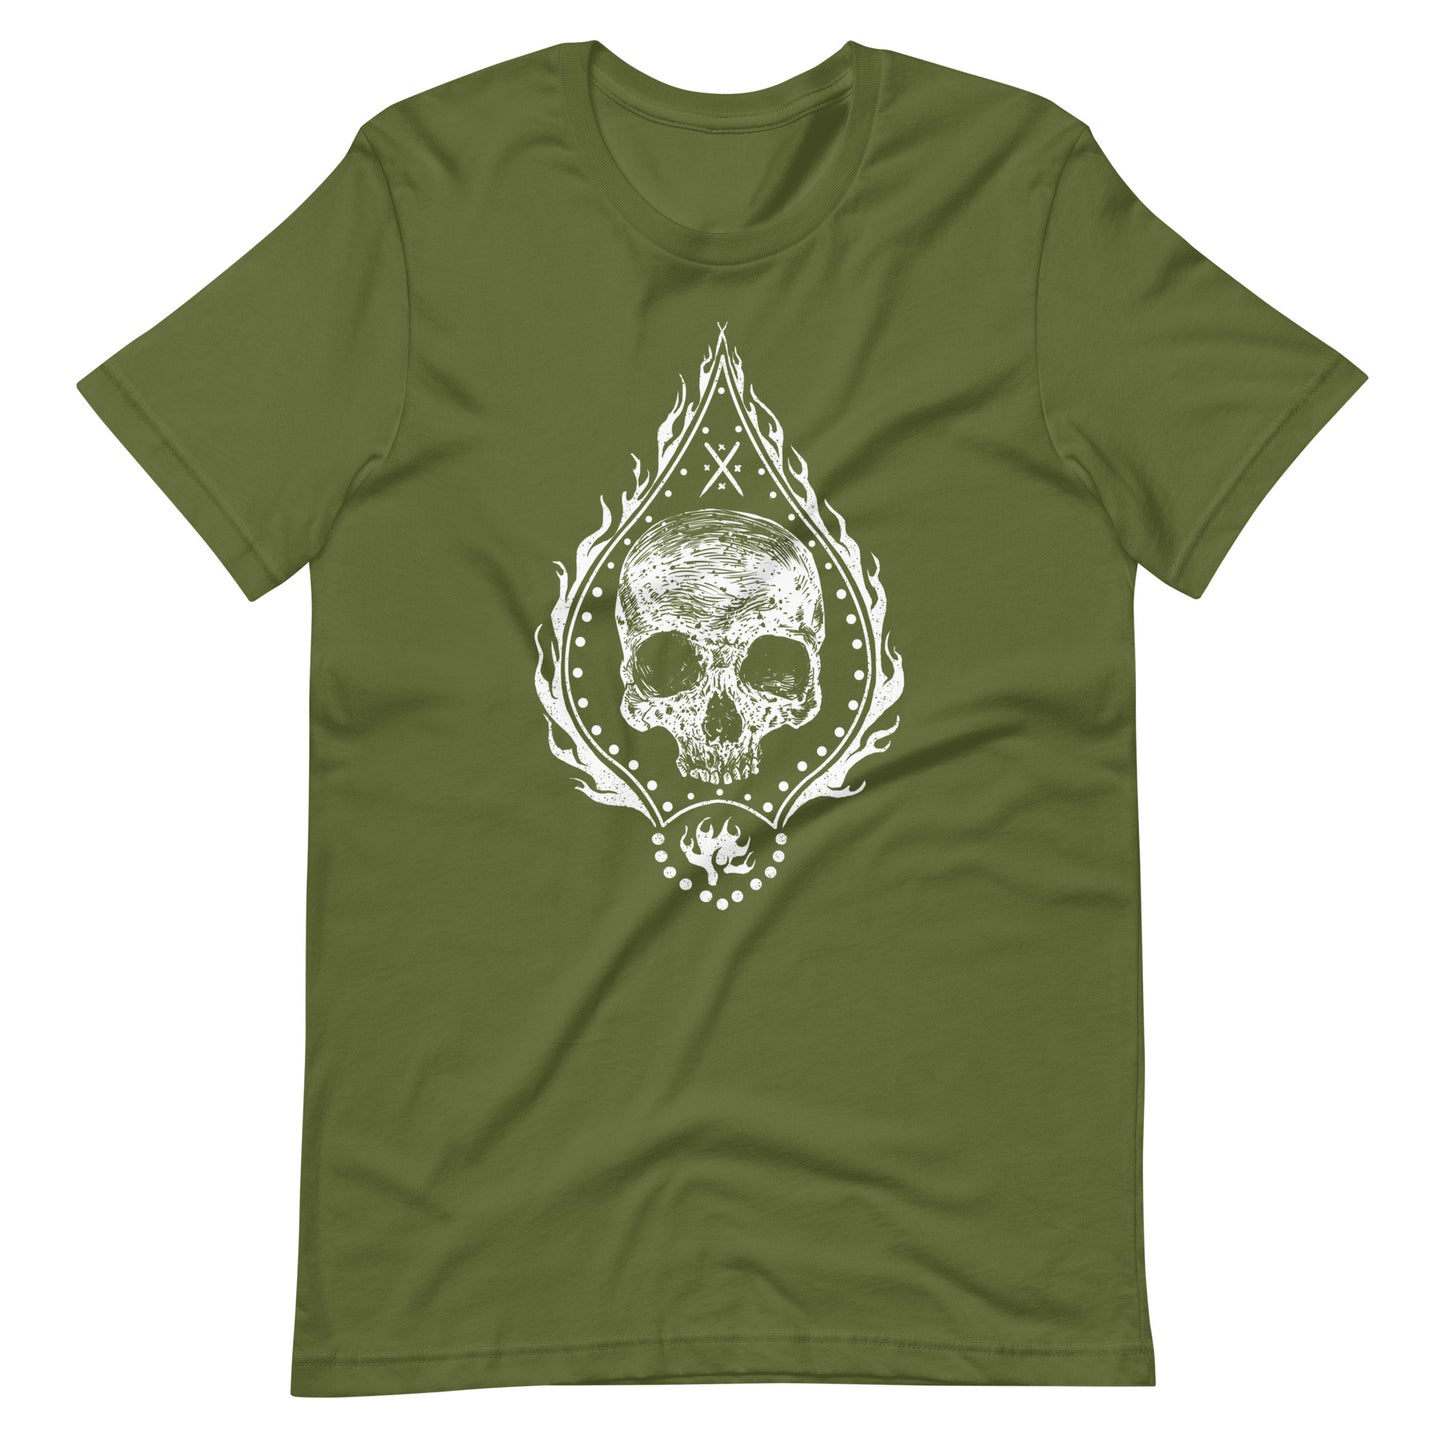 Fire Skull White - Men's t-shirt - Olive Front